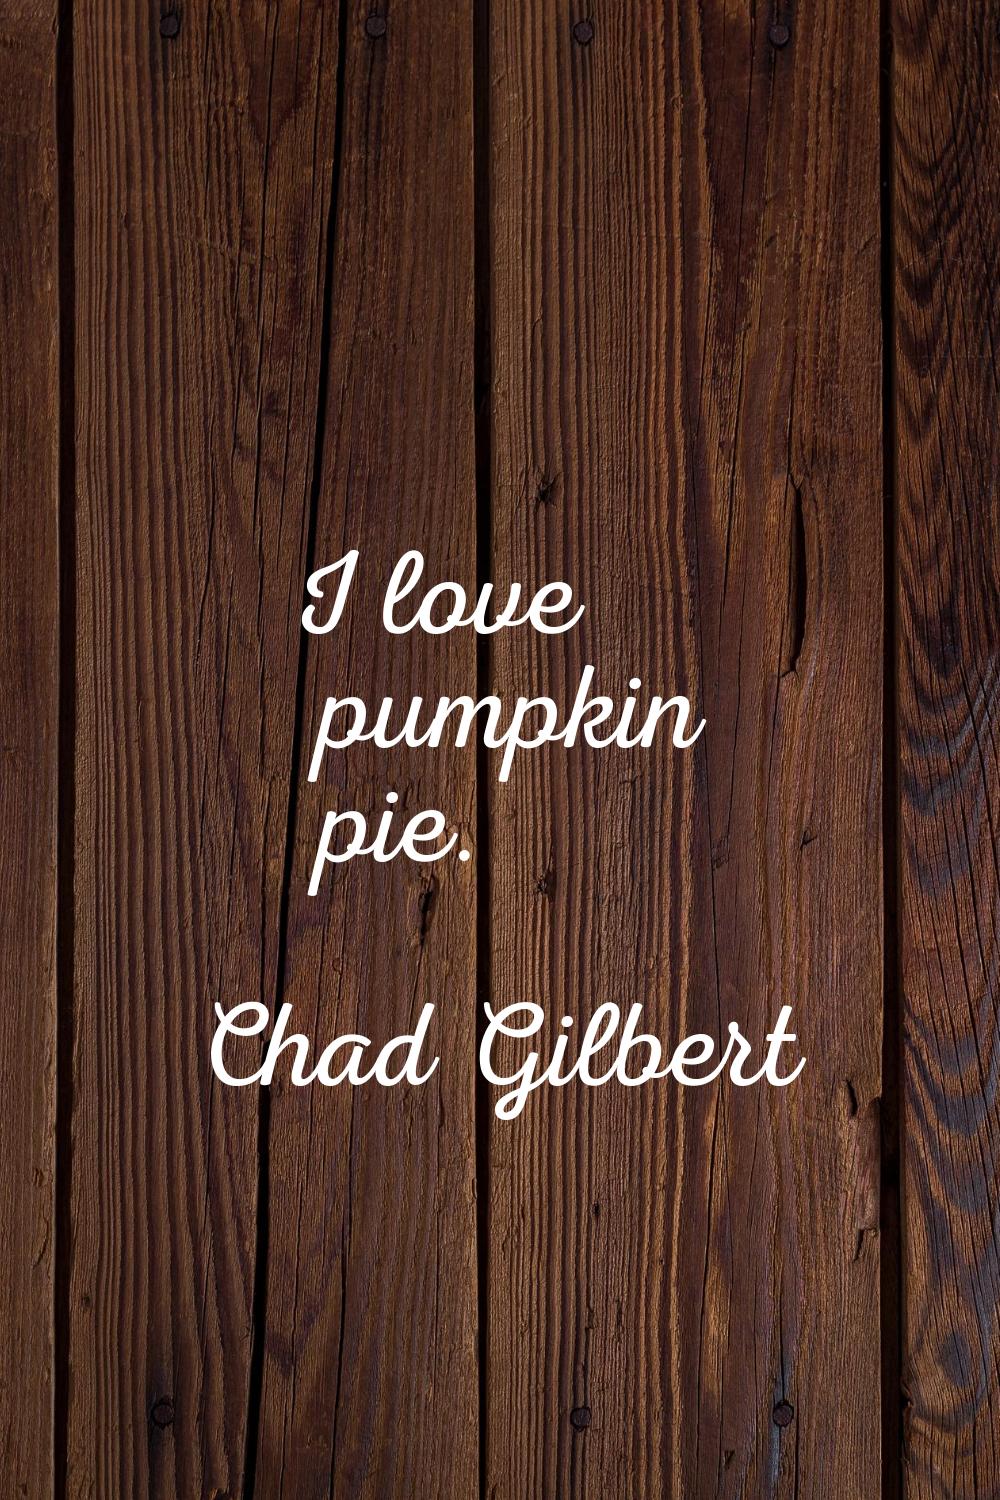 I love pumpkin pie.